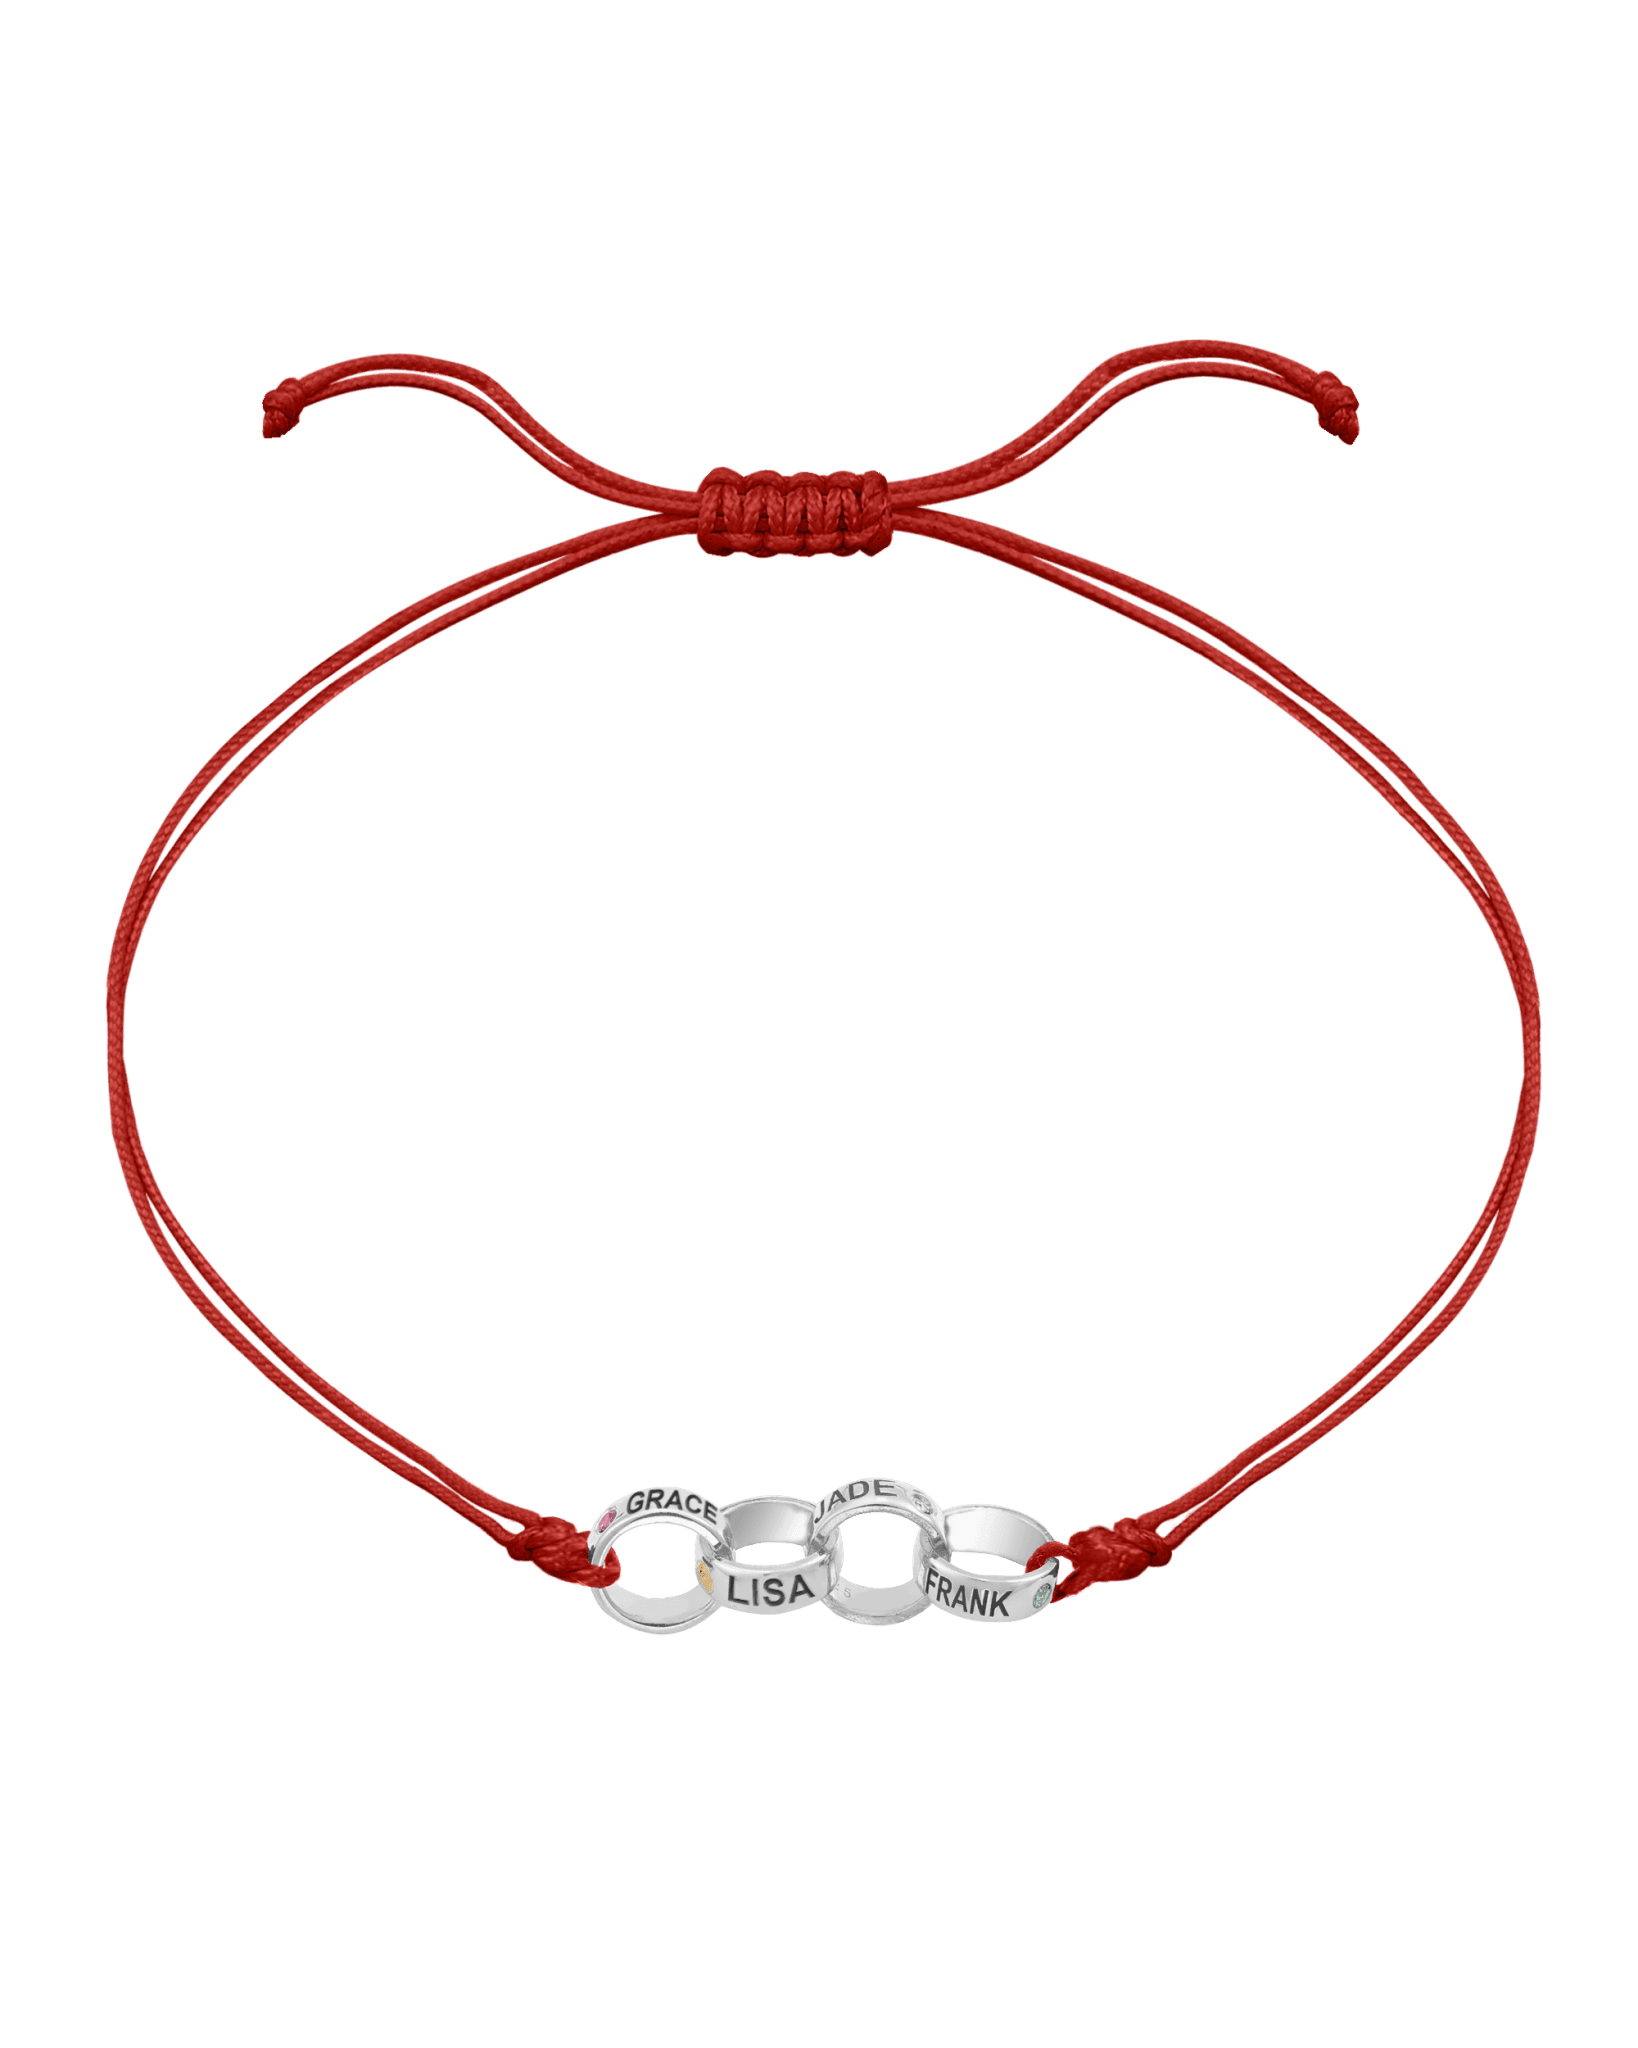 Engravable Links of Love - 925 Sterling Silver Bracelets magal-dev 4 Red 